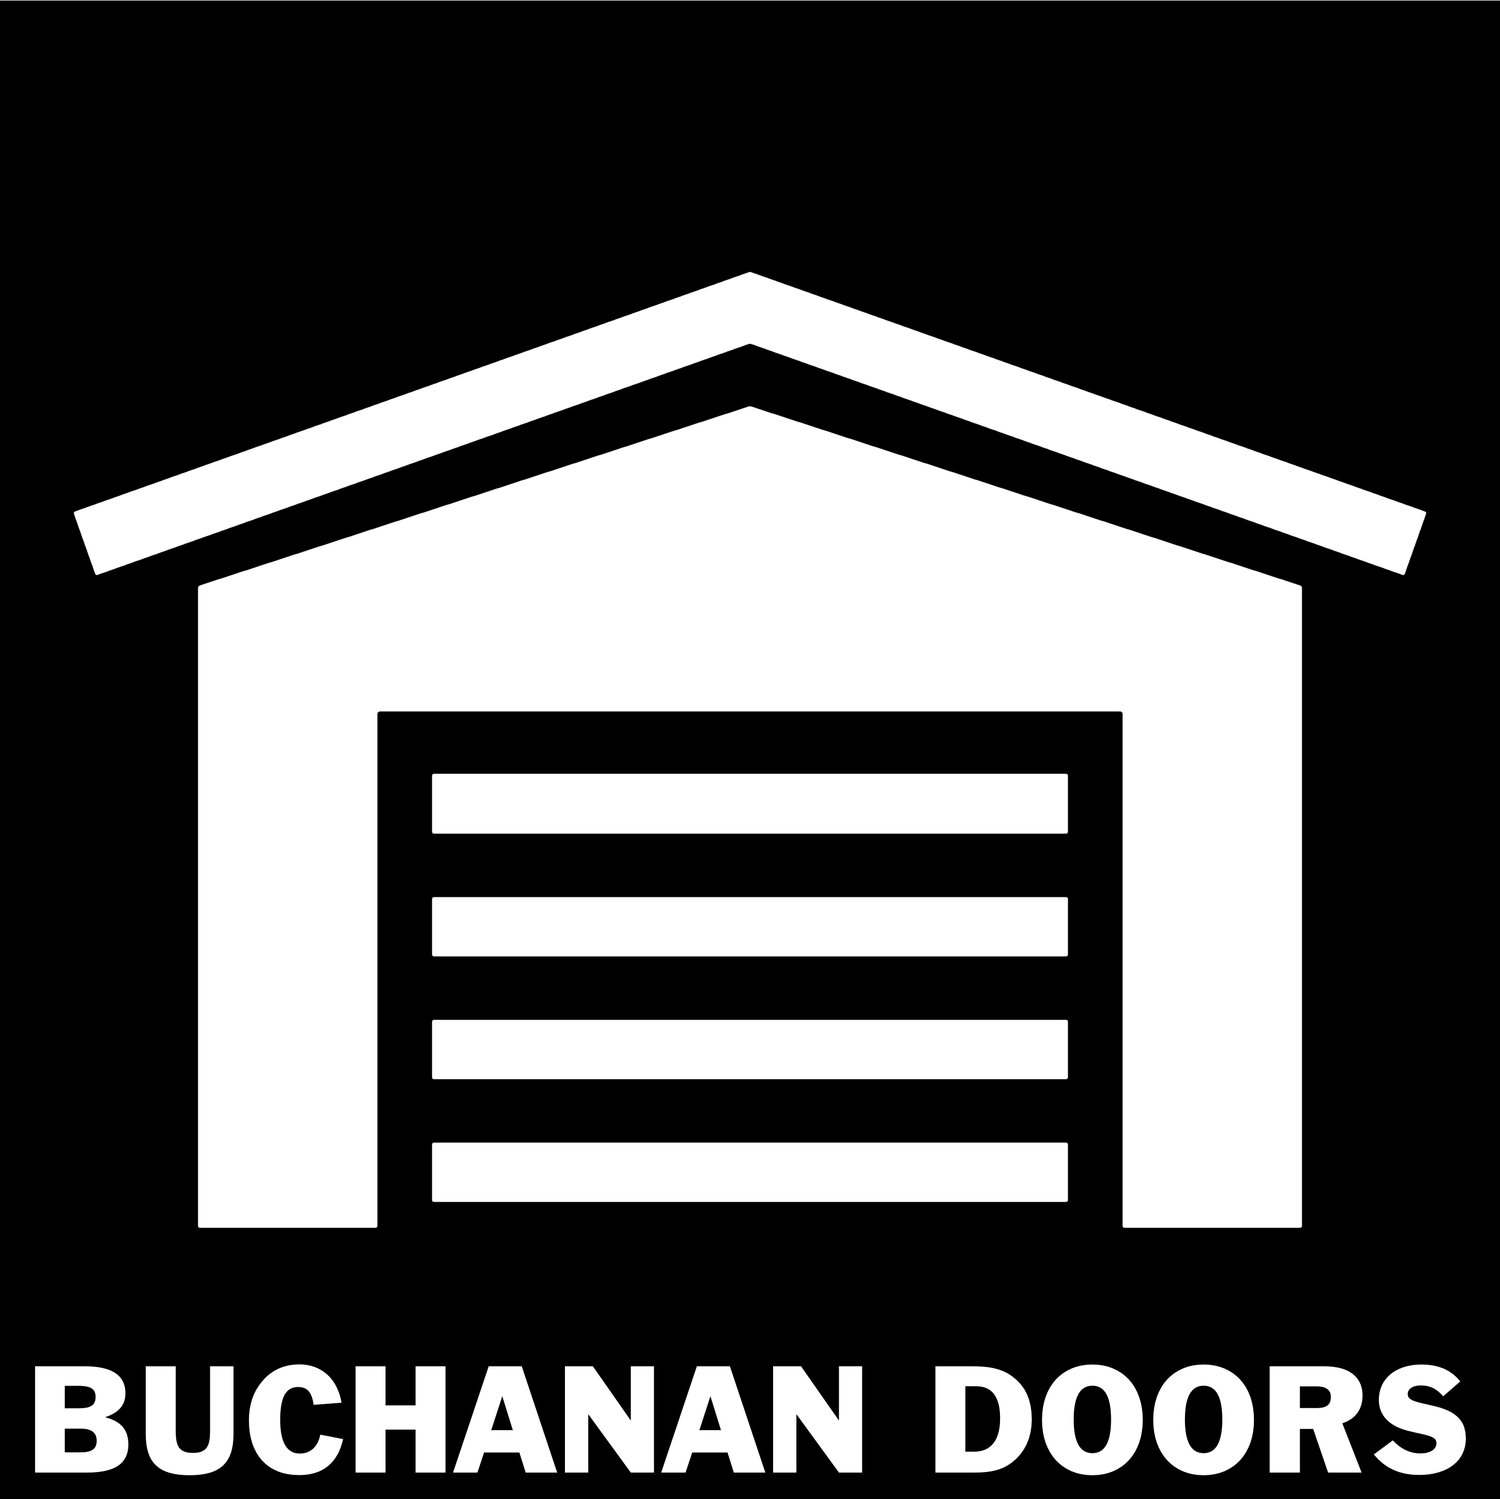 BUCHANAN DOORS